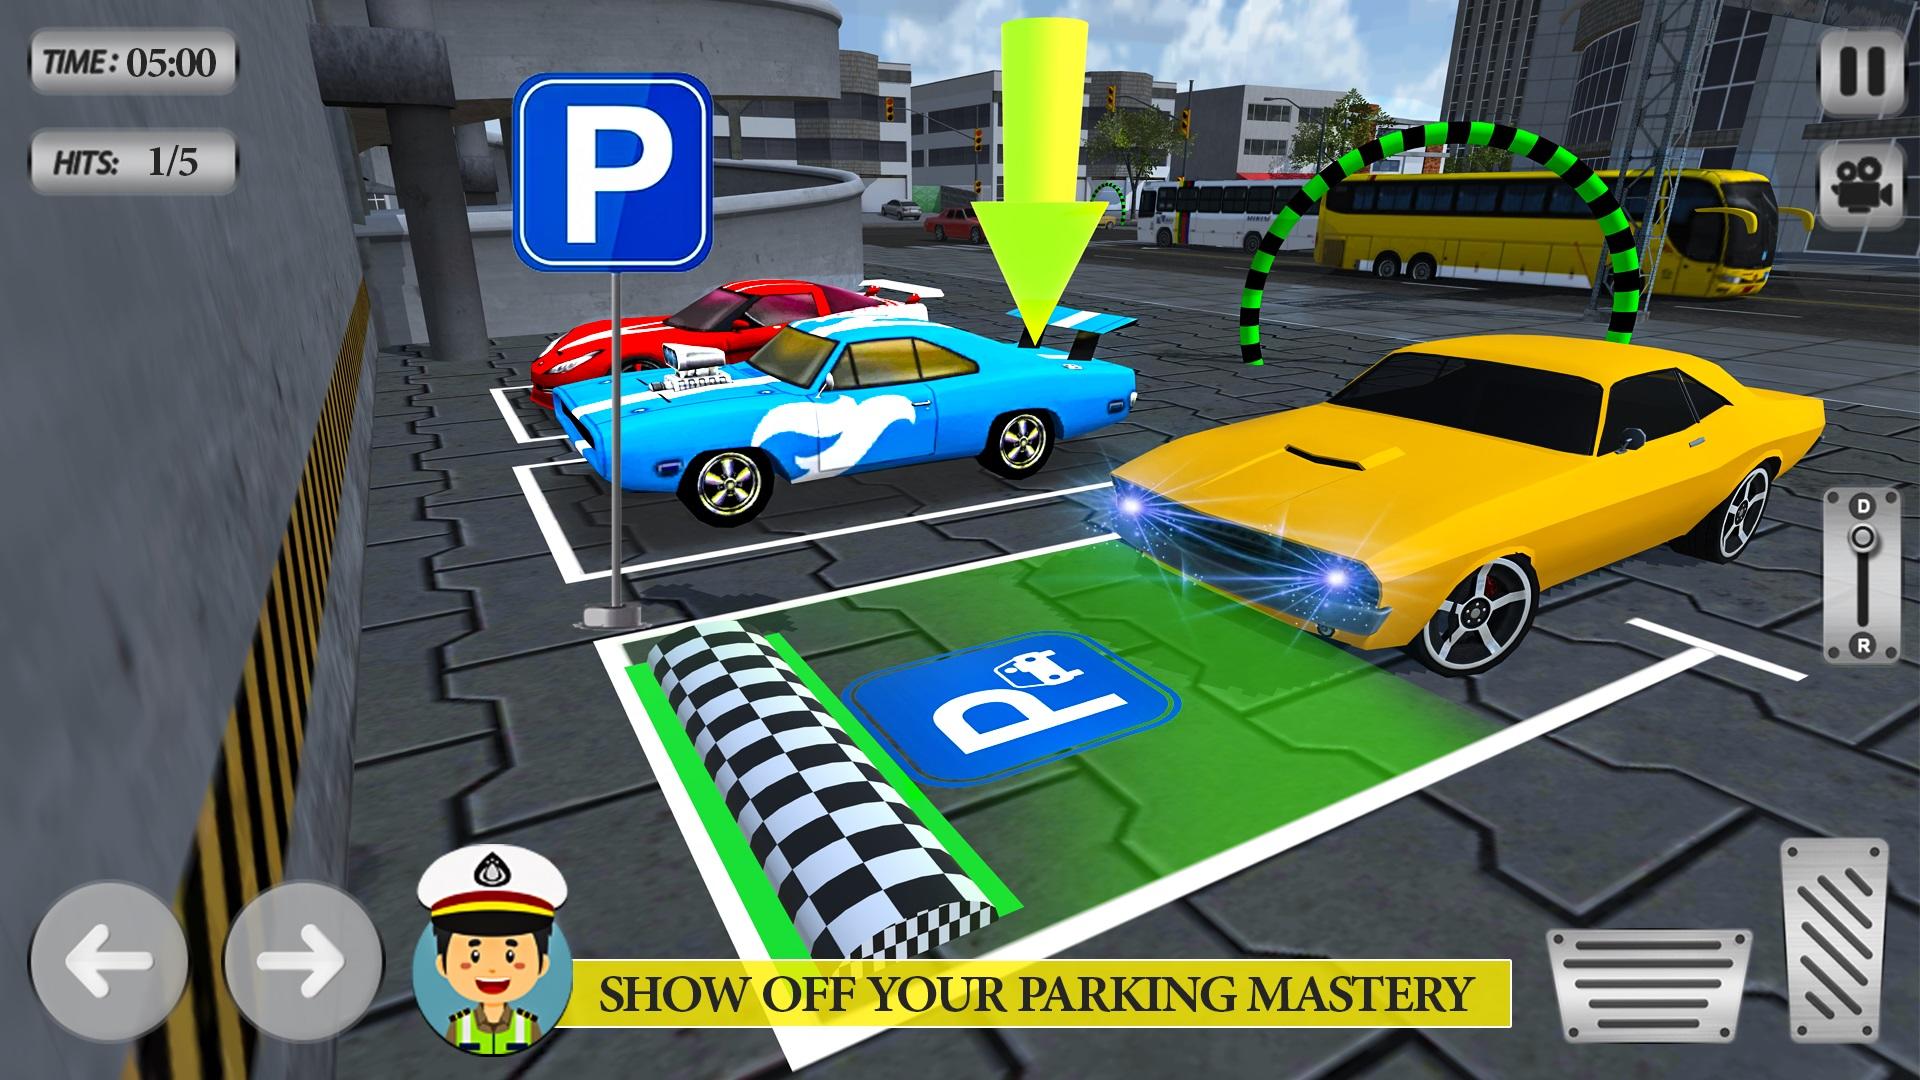 Faça download do Jogos de estacionamento 3D APK v1.6 para Android